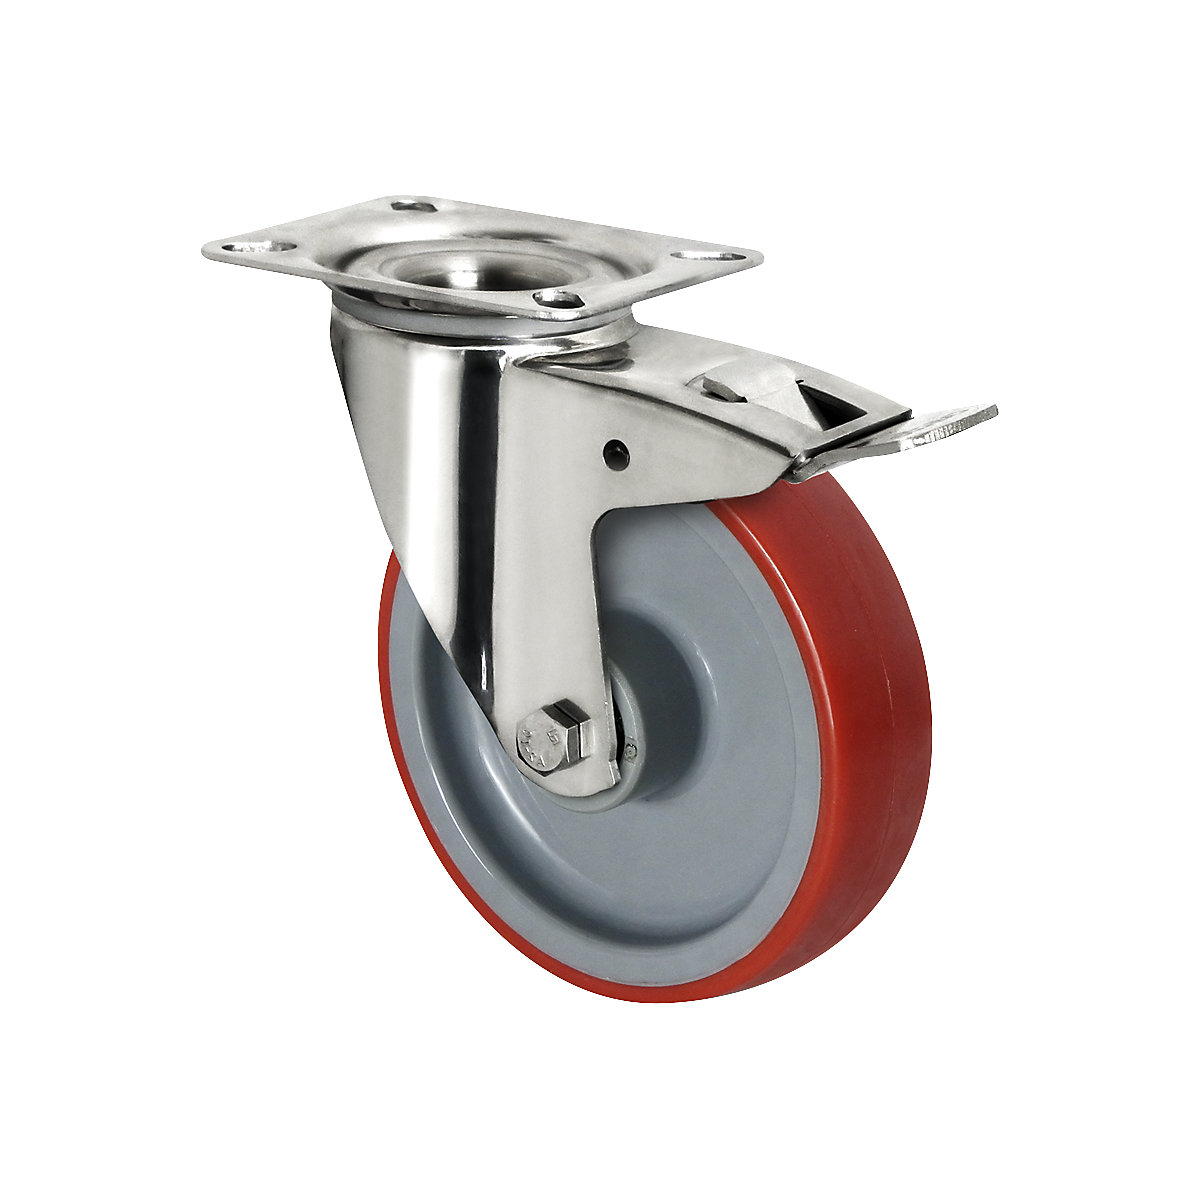 Roulette polyuréthane sur jante polyamide – eurokraft basic, Ø x largeur roue 200 x 50 mm, à partir de 2 pièces, roulette pivotante avec blocage double